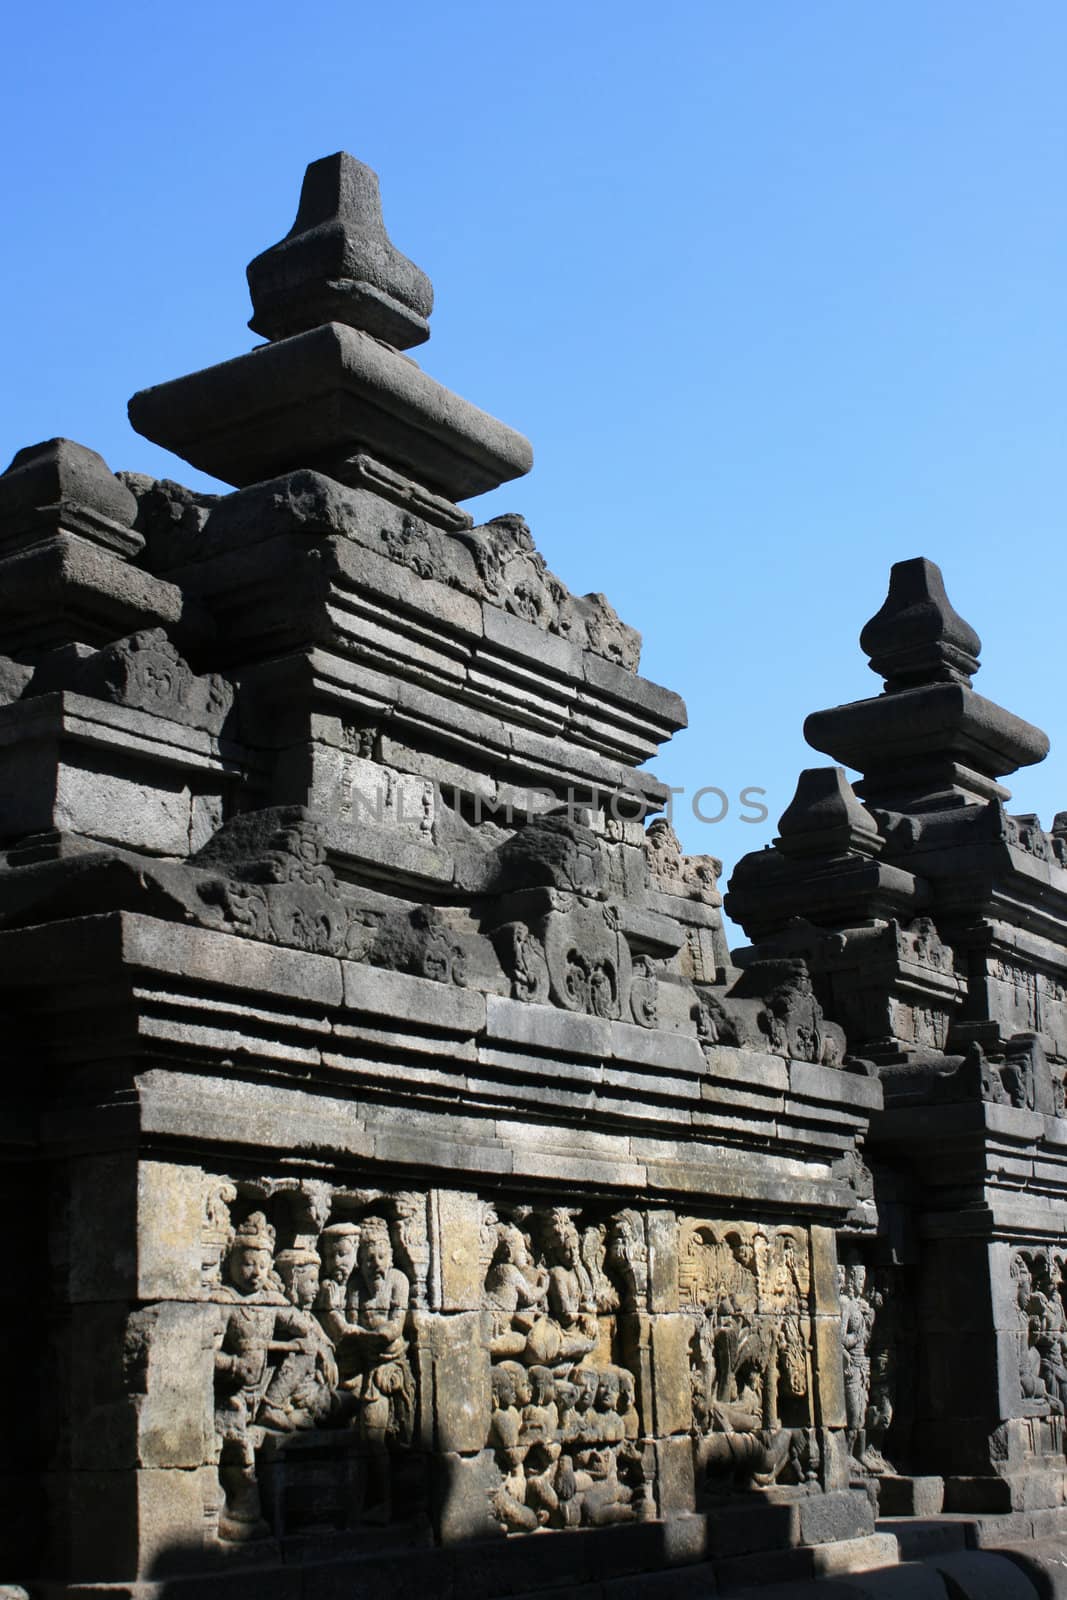 Part of architecture in Borobudur, Indonesia